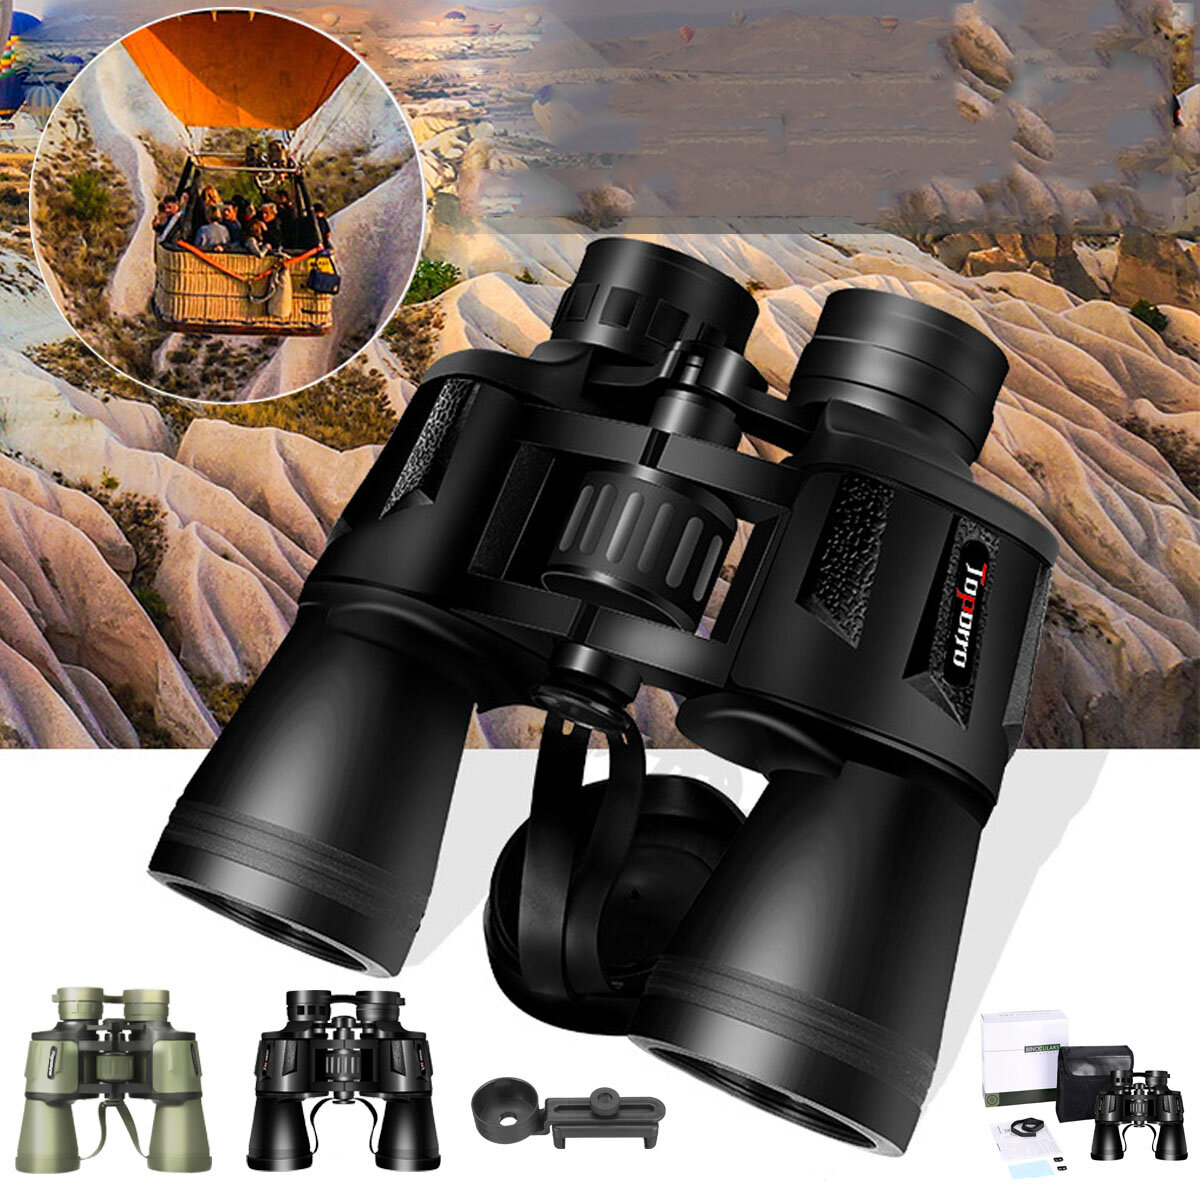 20X50 Hoogwaardige professionele HD-telescoop met nachtzicht voor buiten kamperen en reizen.